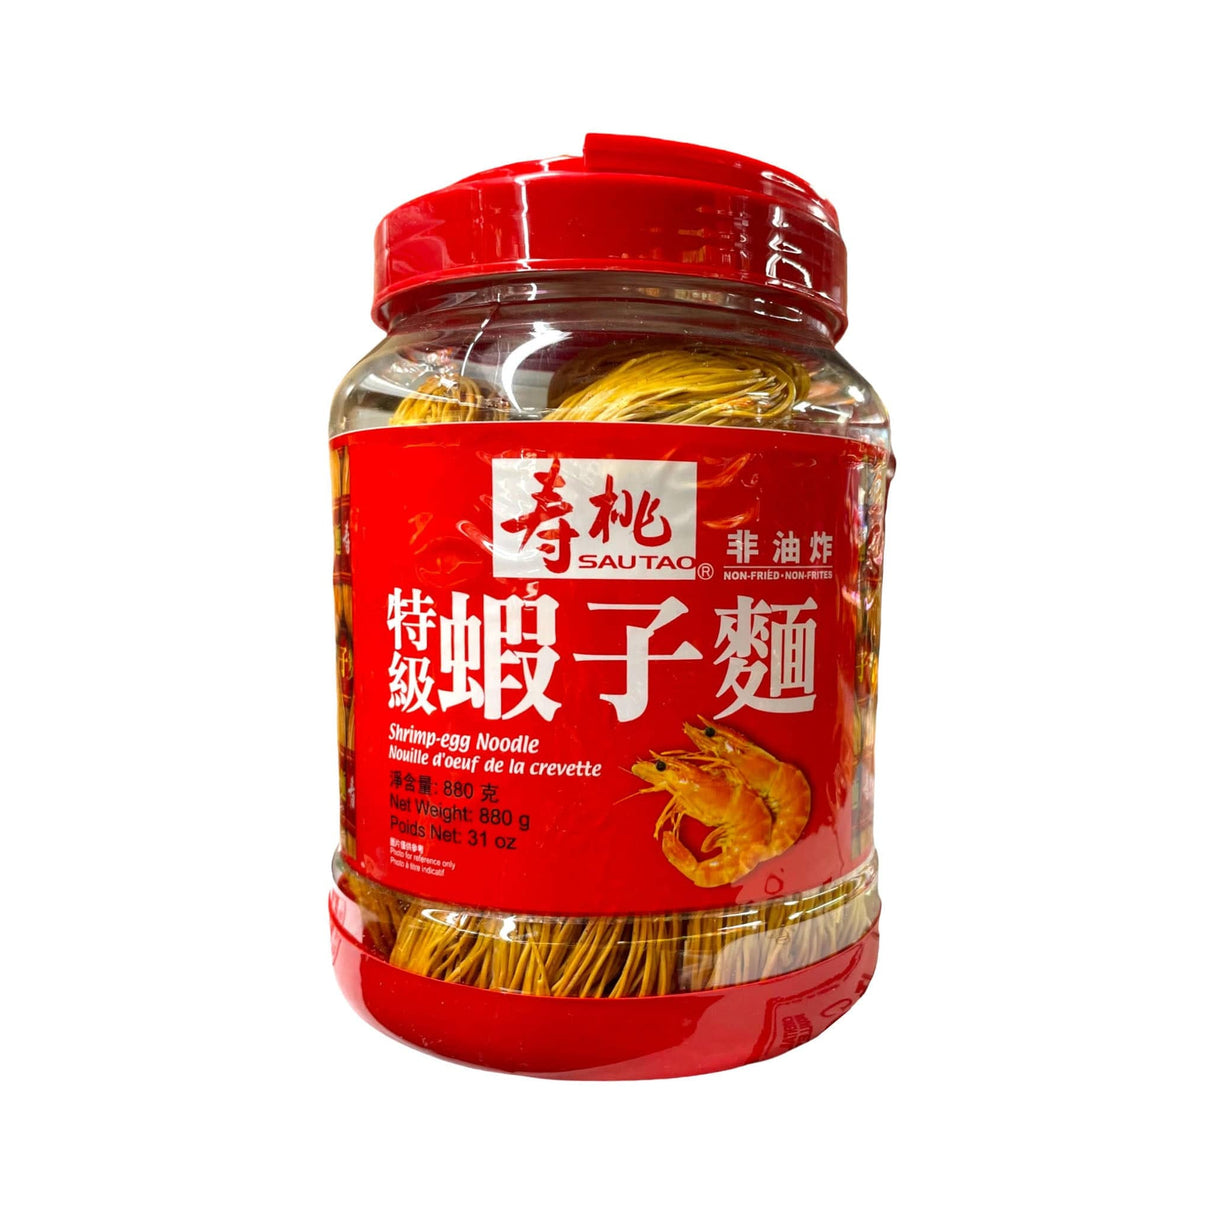 Sautao Shrimp-Egg Noodle